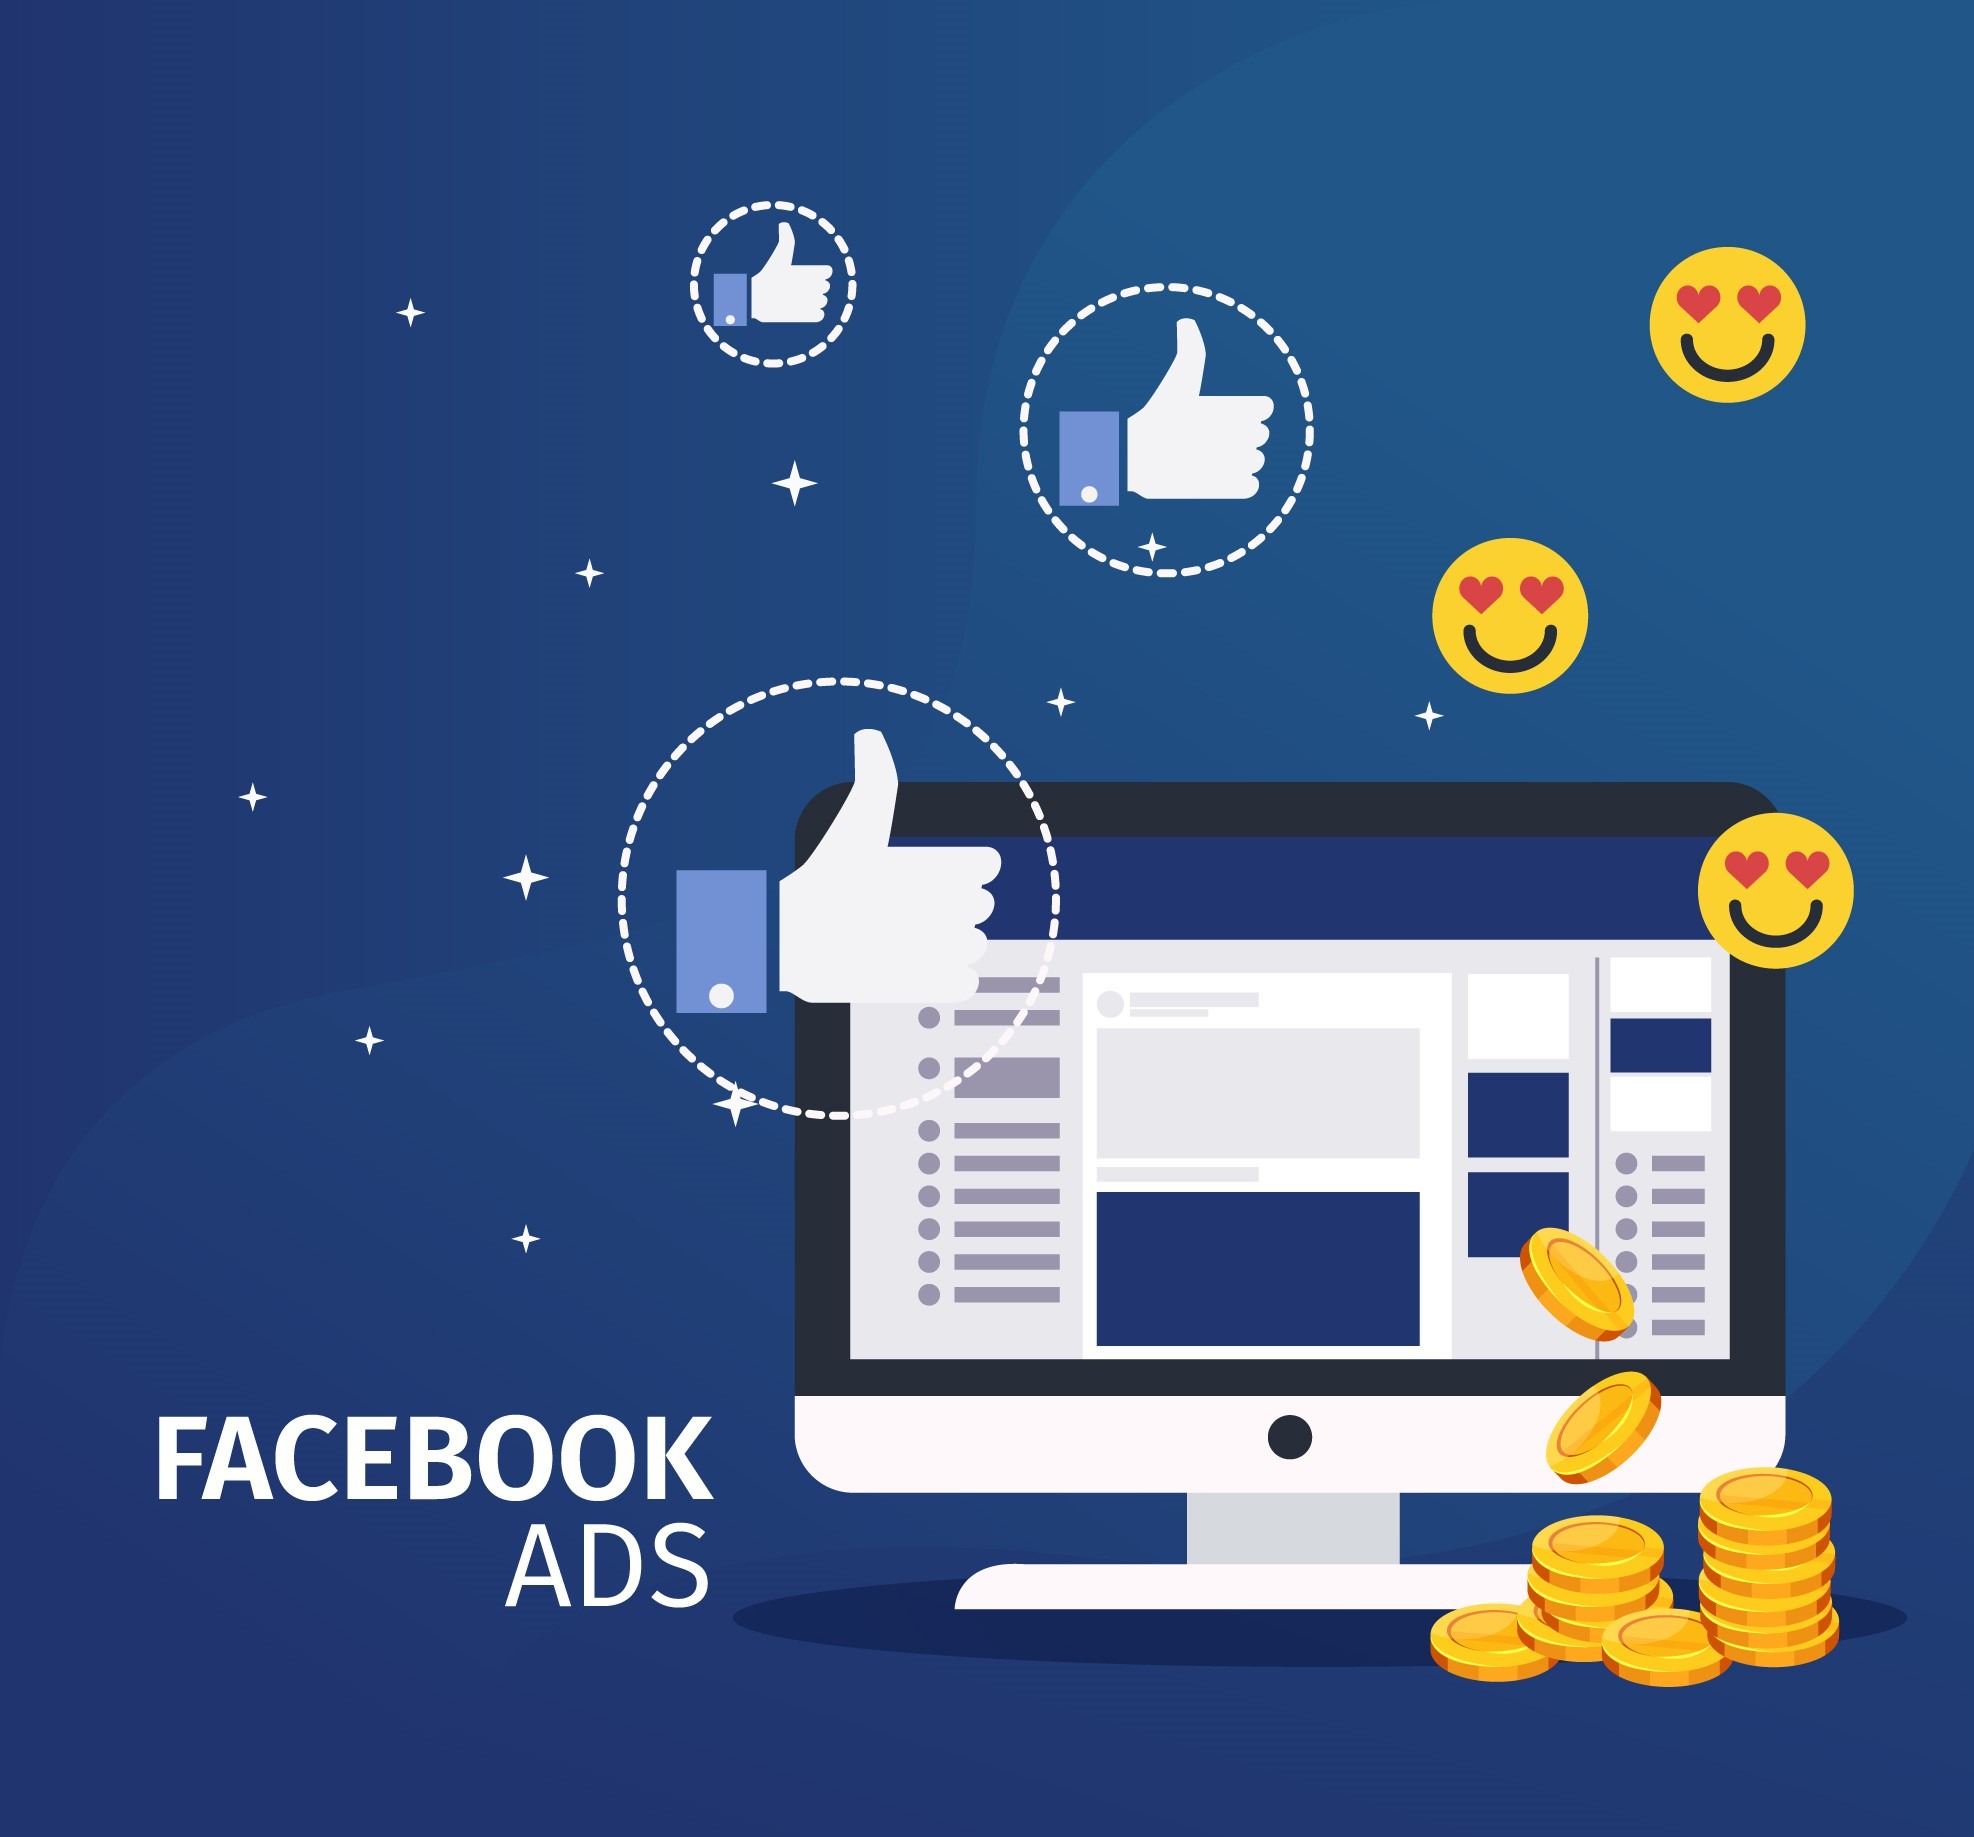 Quảng cáo Facebook bao nhiêu tiền